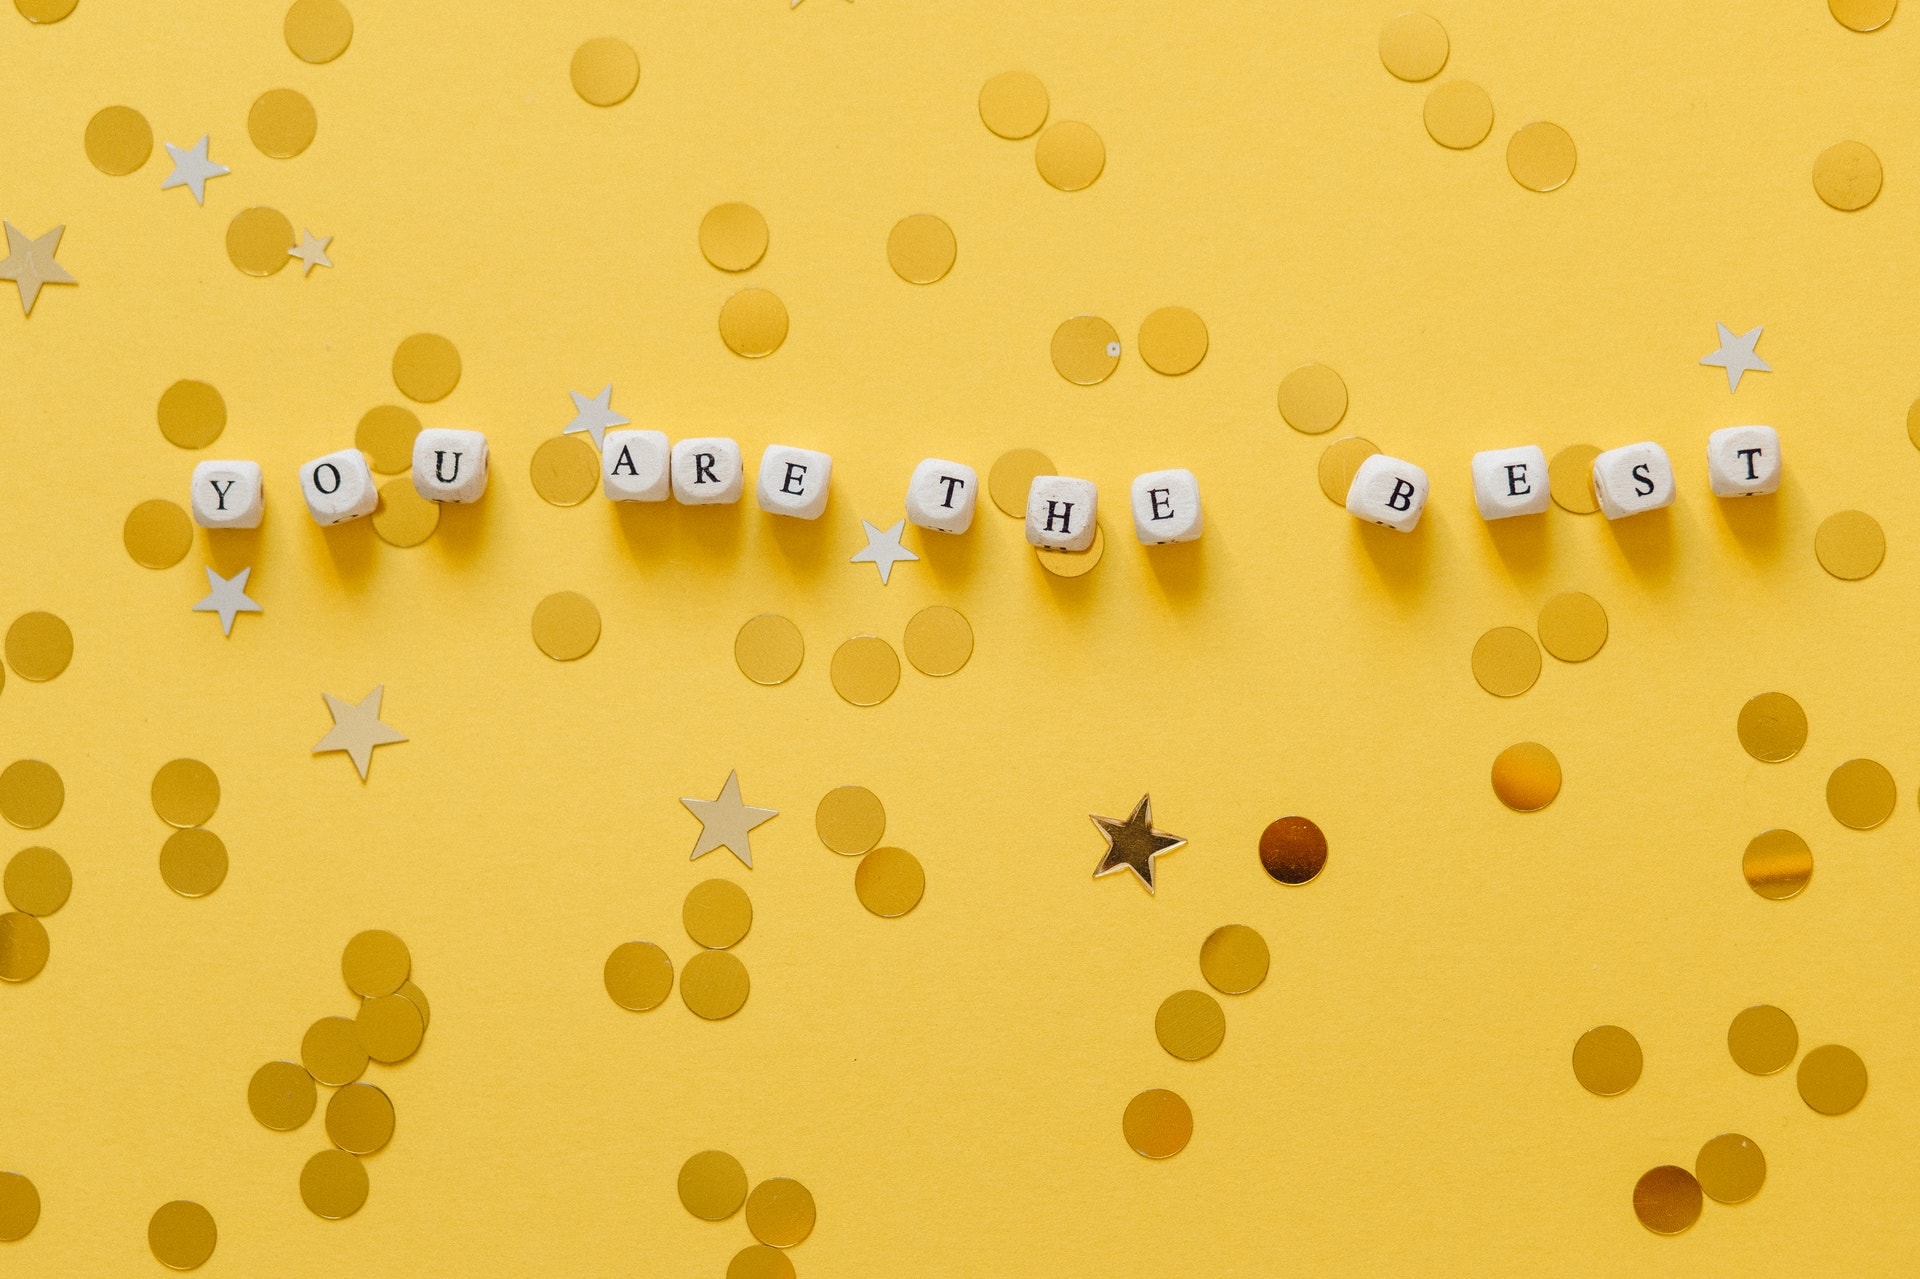 Auf einer gelben Oberfläche liegen mehrere Würel mit Buchstaben bedruckt. Zusammen bilden die Würfel den Satz "You are the best". Drumherum ist goldfarbenes Konfetti verteilt.